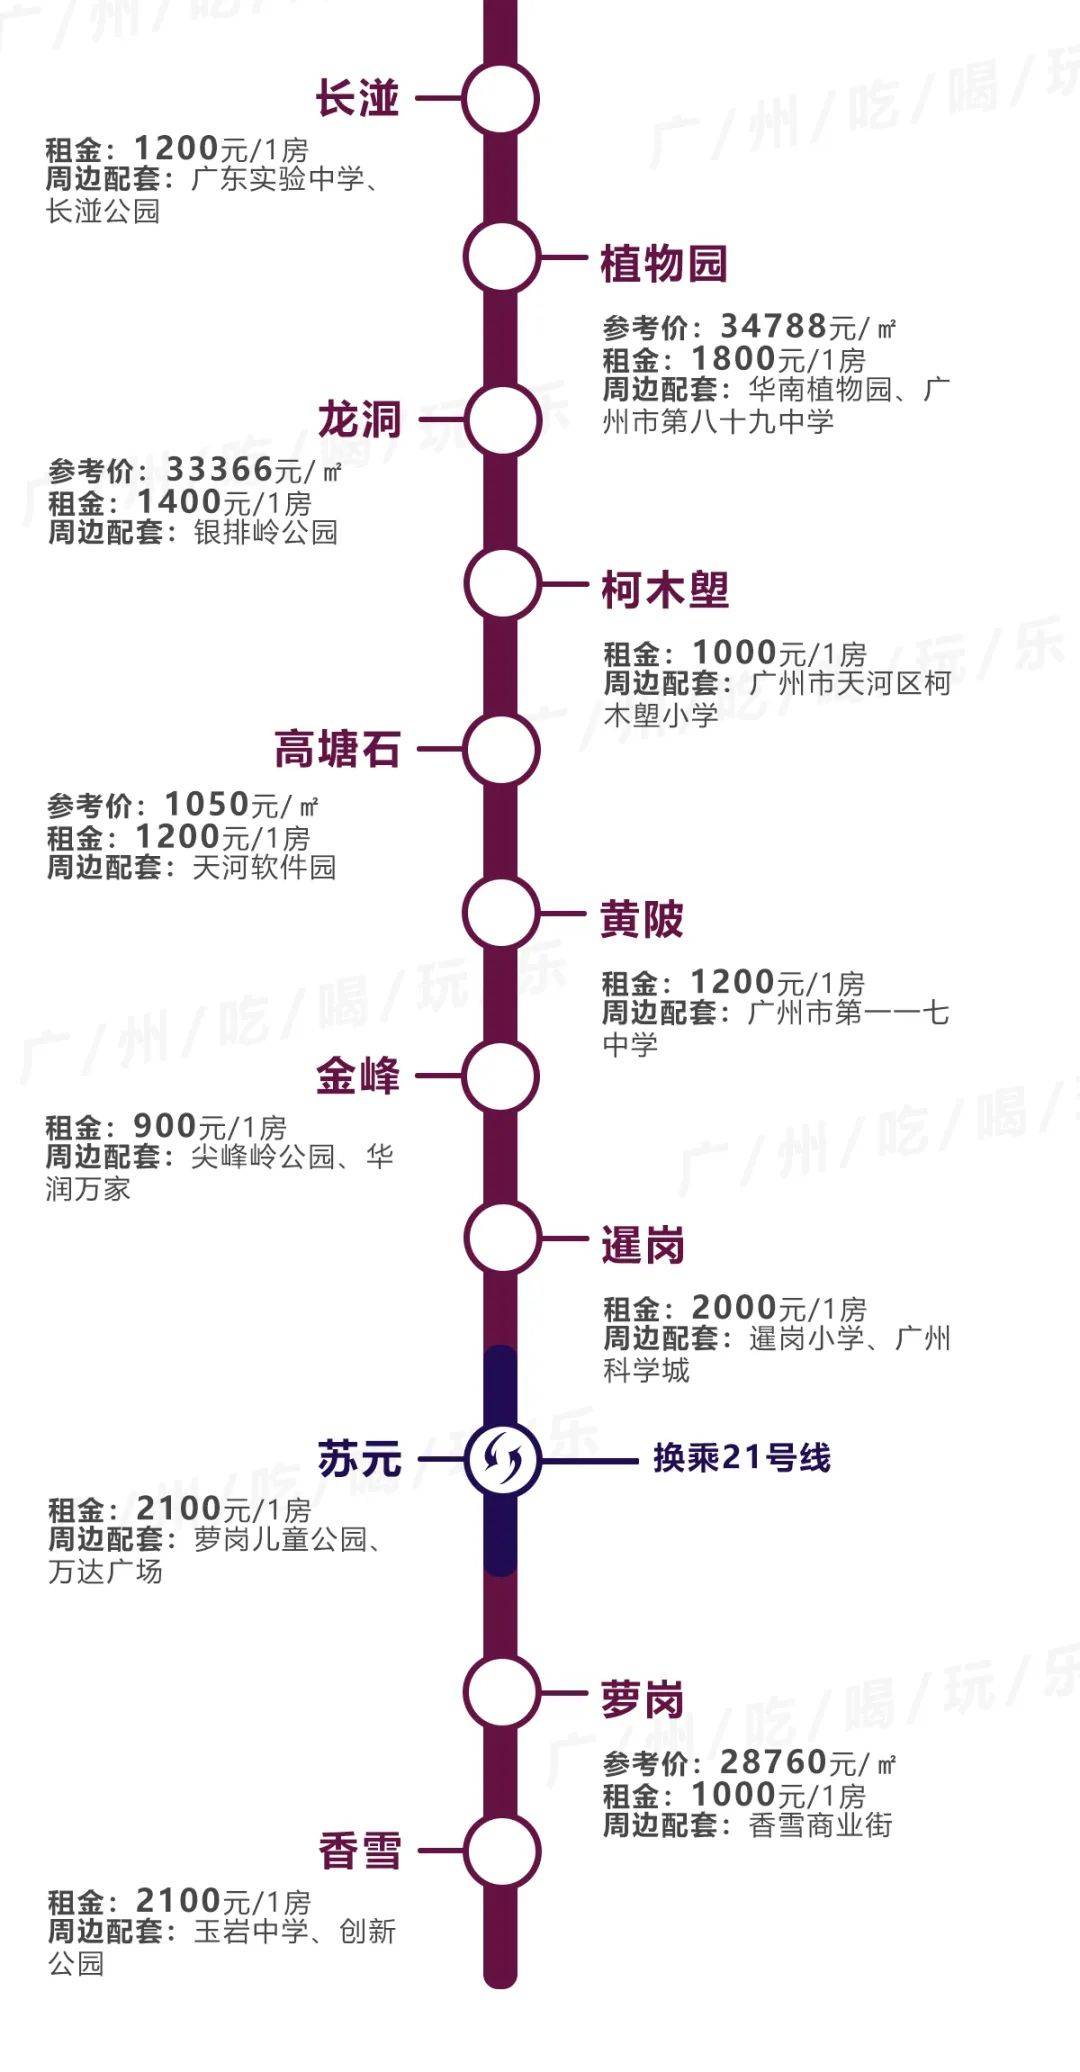 广州租房最便宜的,竟不是东圃棠下…14条地铁230 个站点沿线租金曝光!